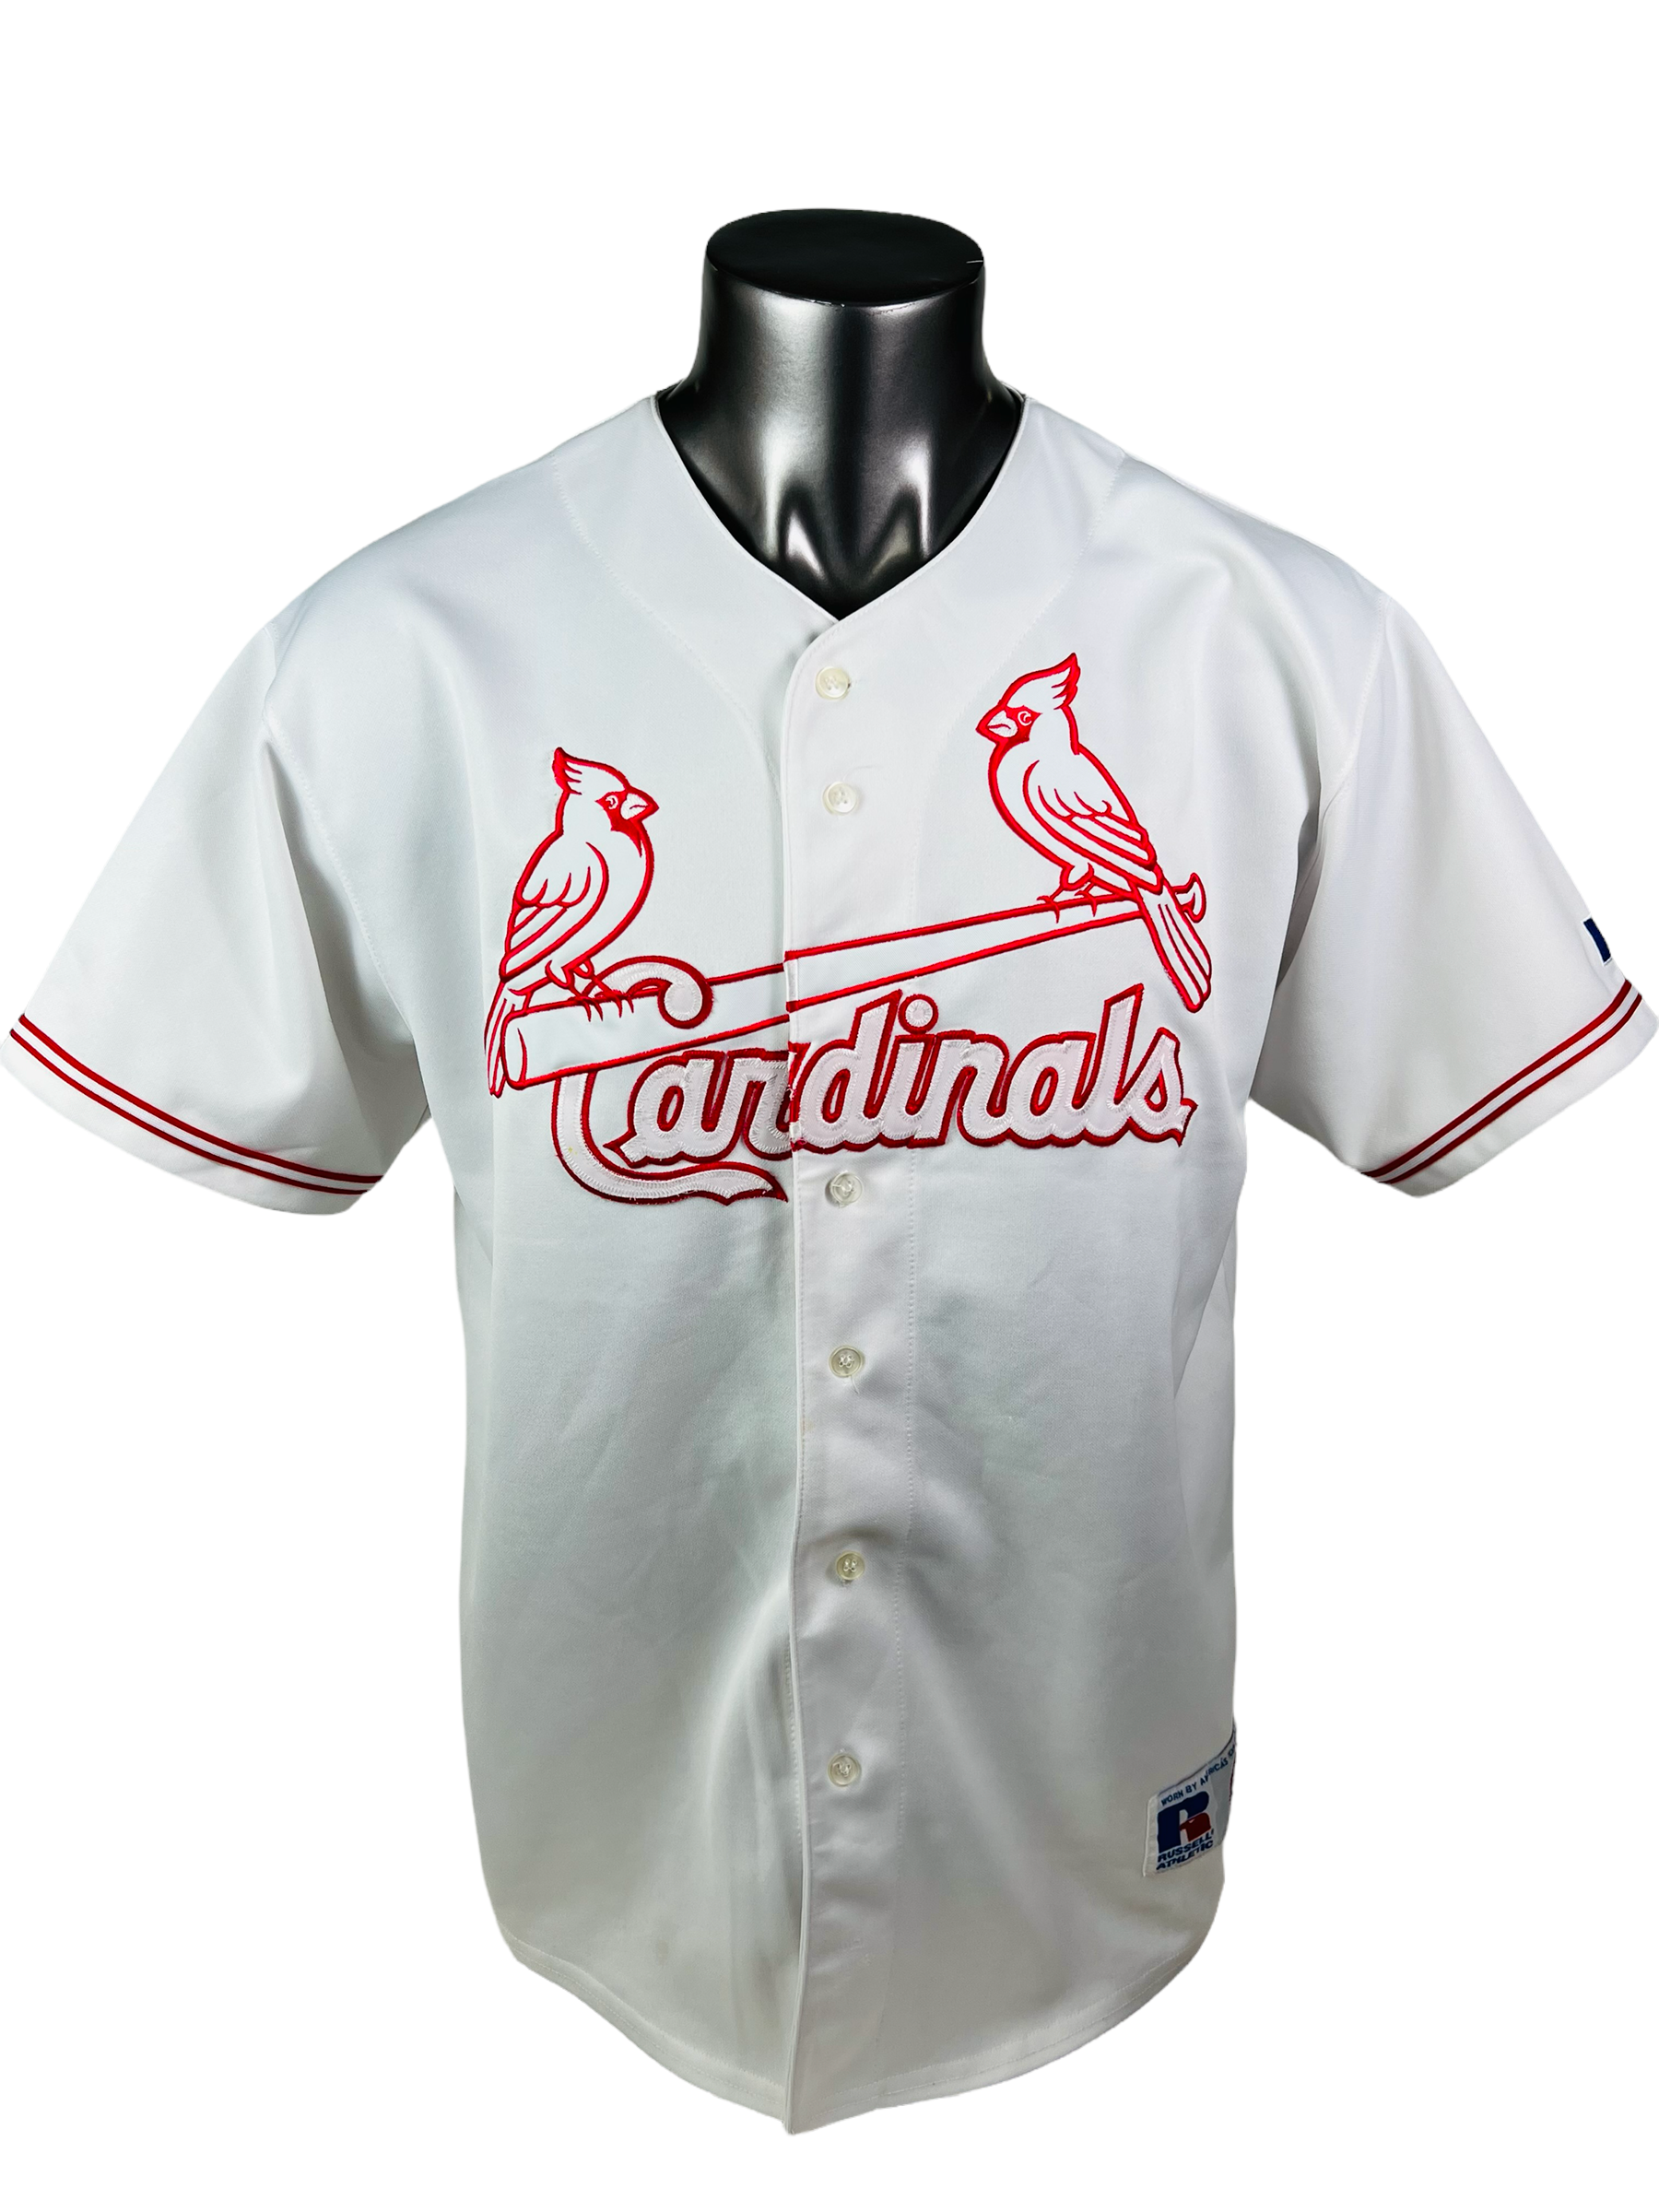 cardinals throwback uniforms